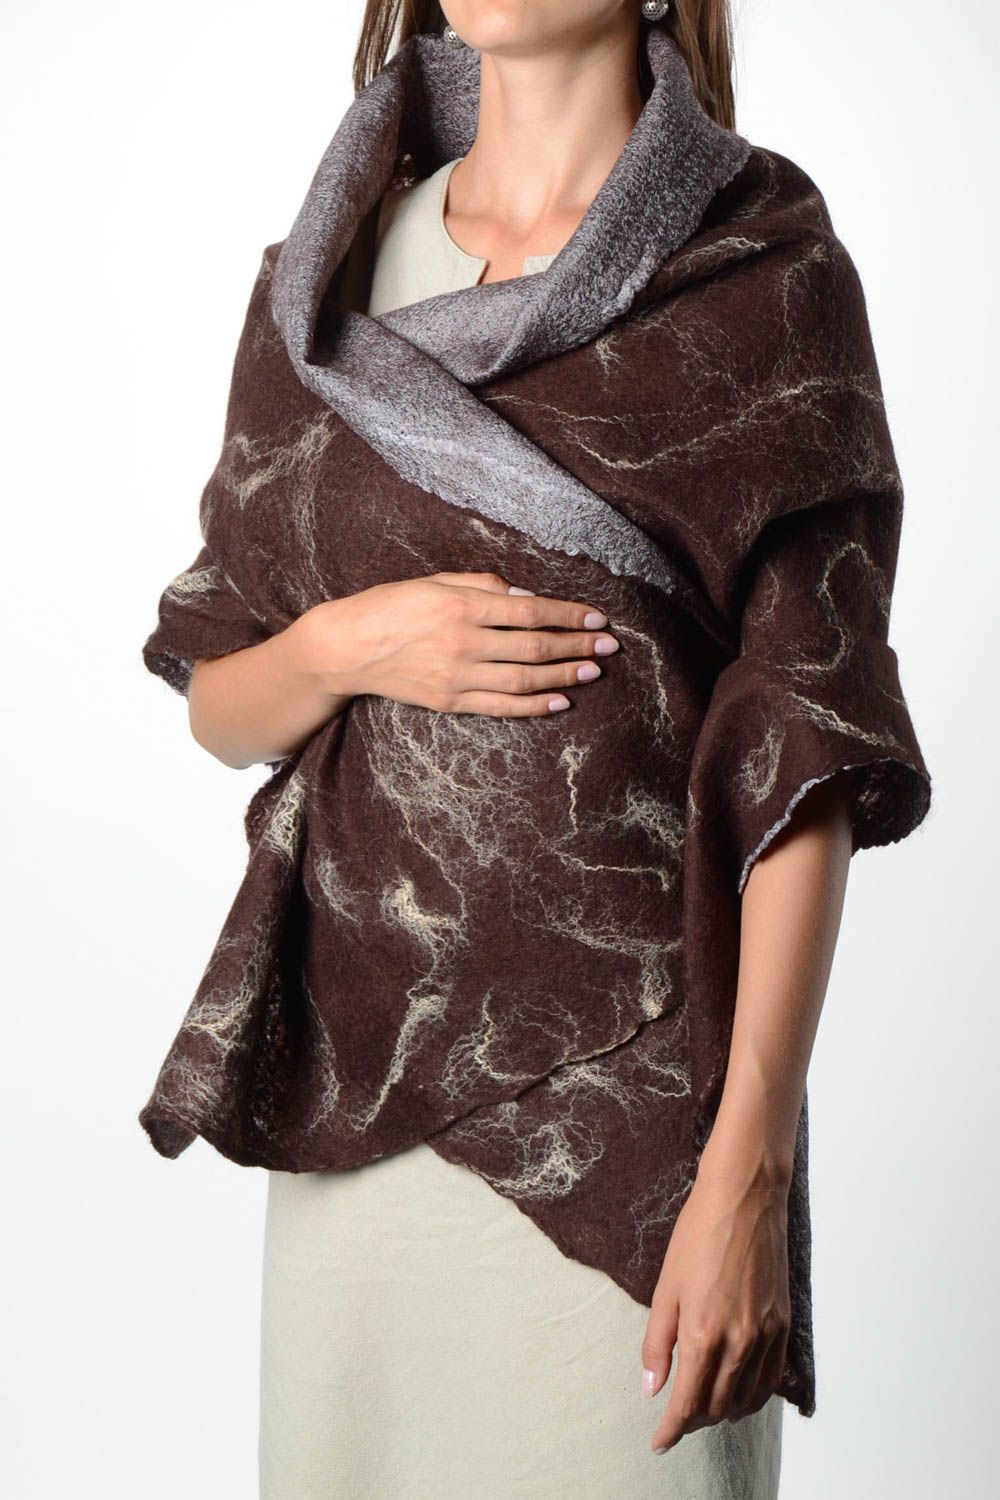 Handmade gefilzter Schal Frauen Accessoire Geschenk für Frau braun breit foto 1